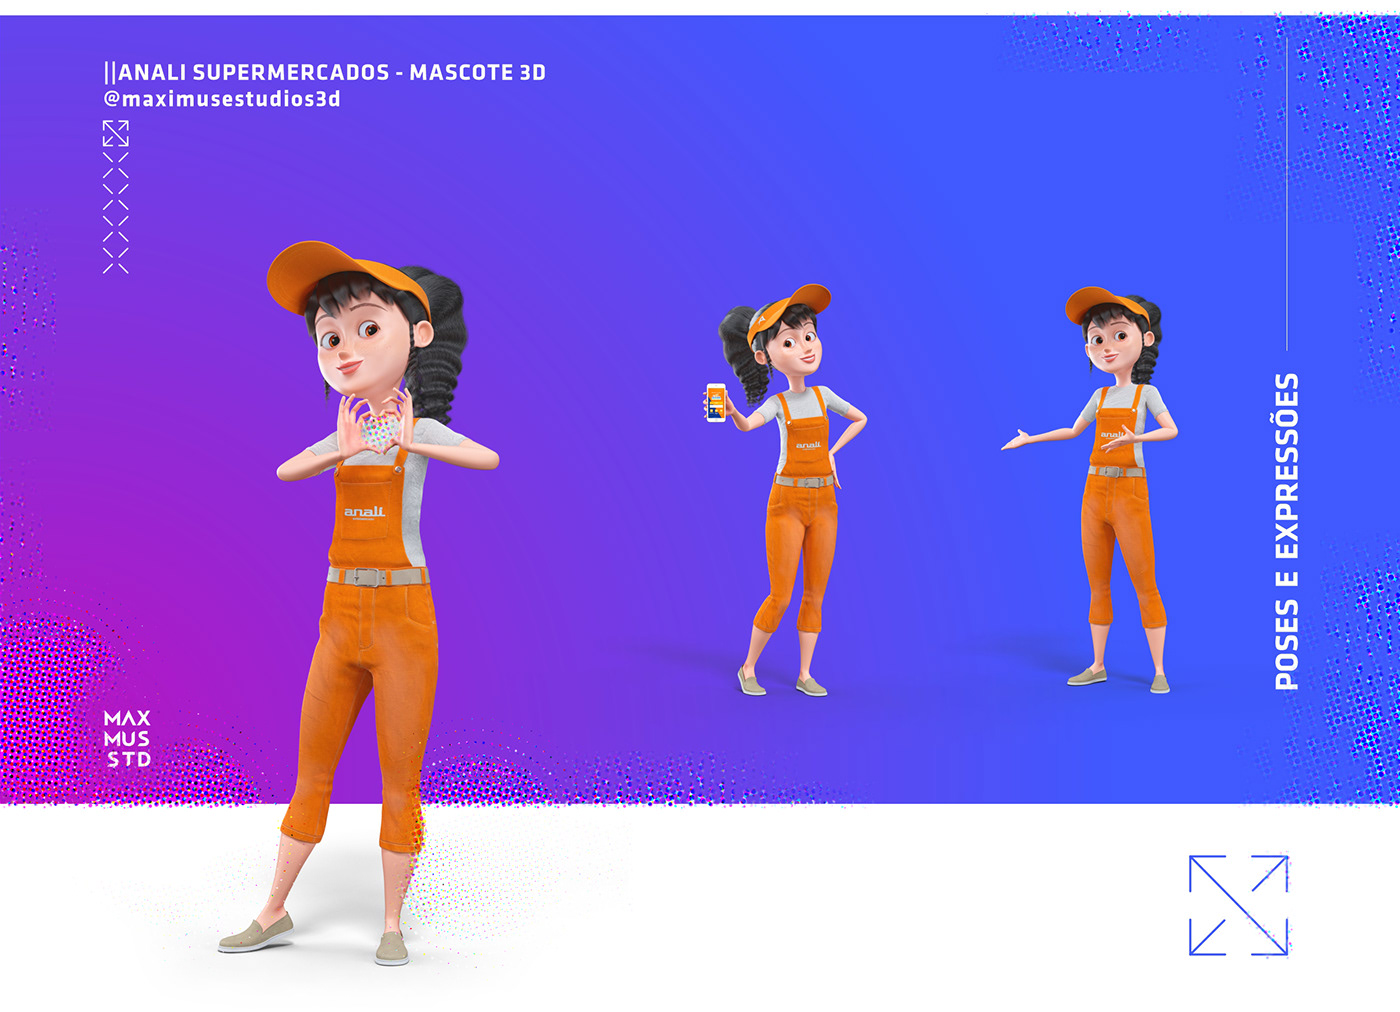 3D Character 3D Mascot Character Mascot mascote mascote 3d personagem Personagem 3D social media